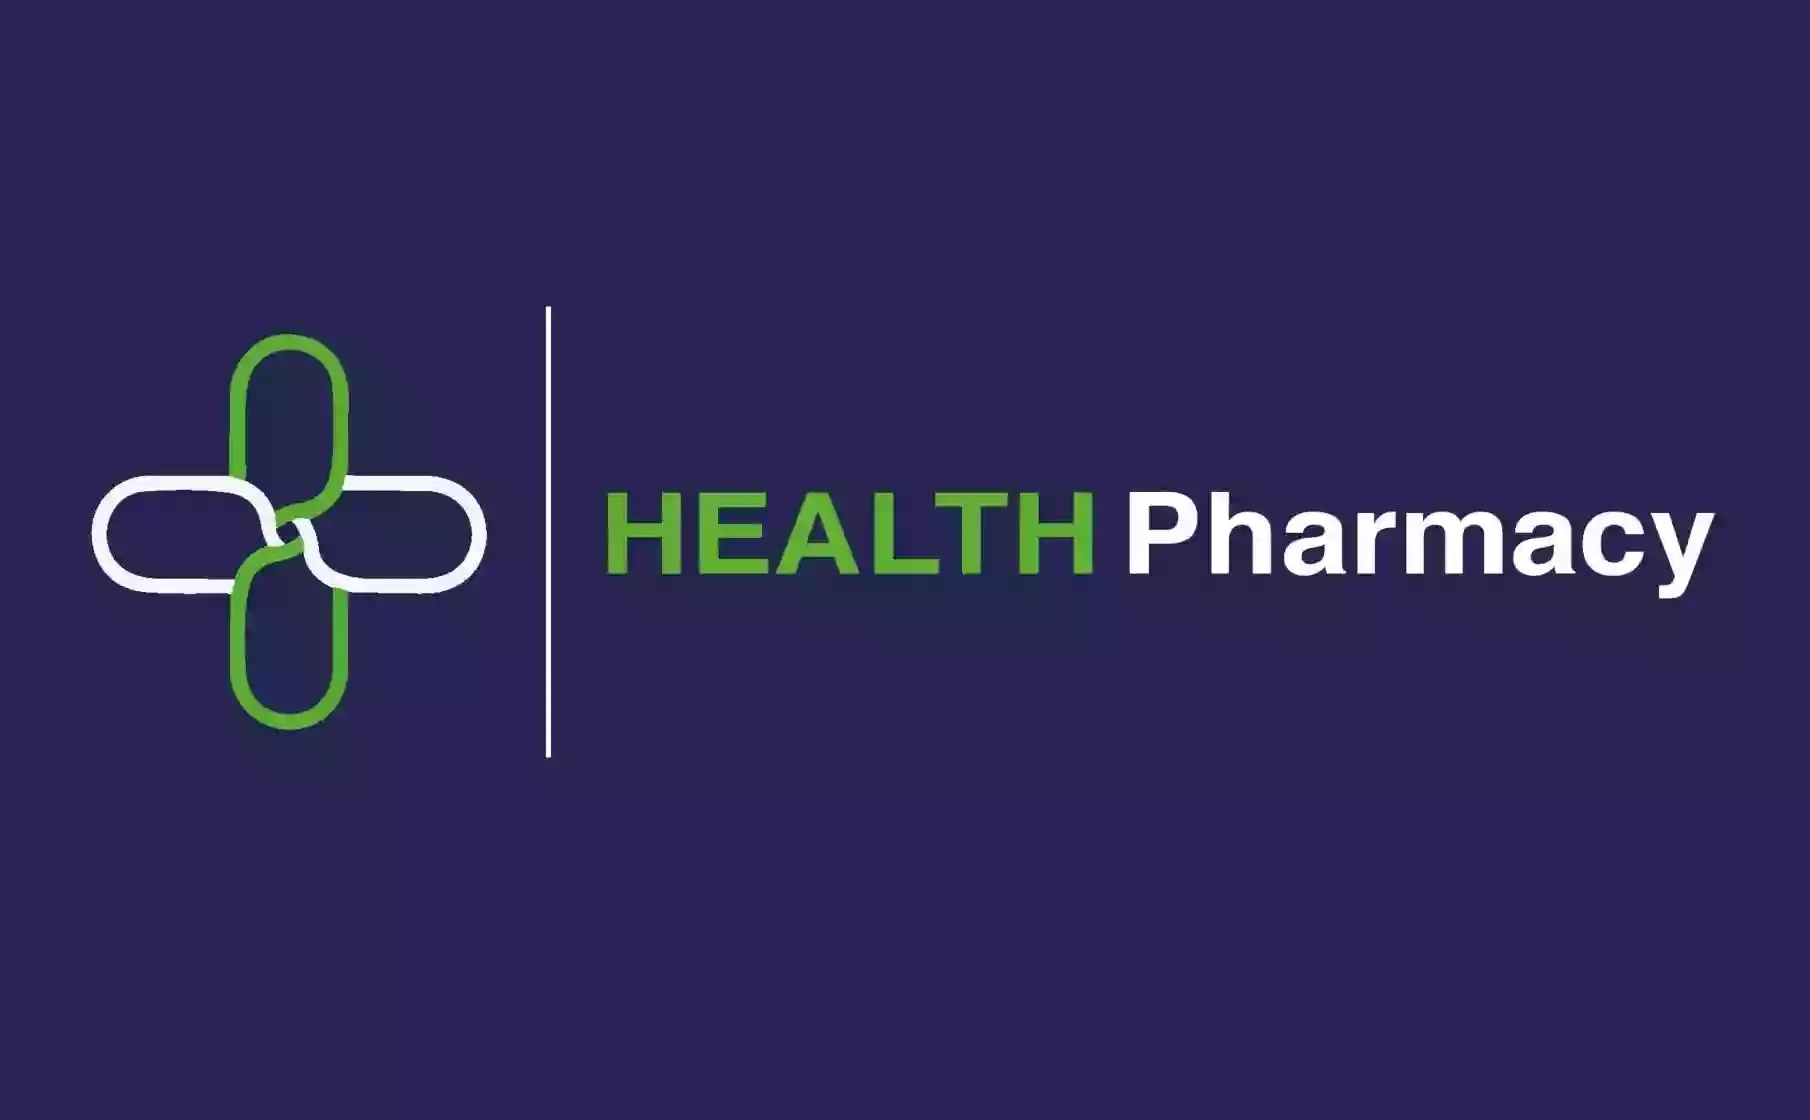 Health Pharmacy - North Harrow